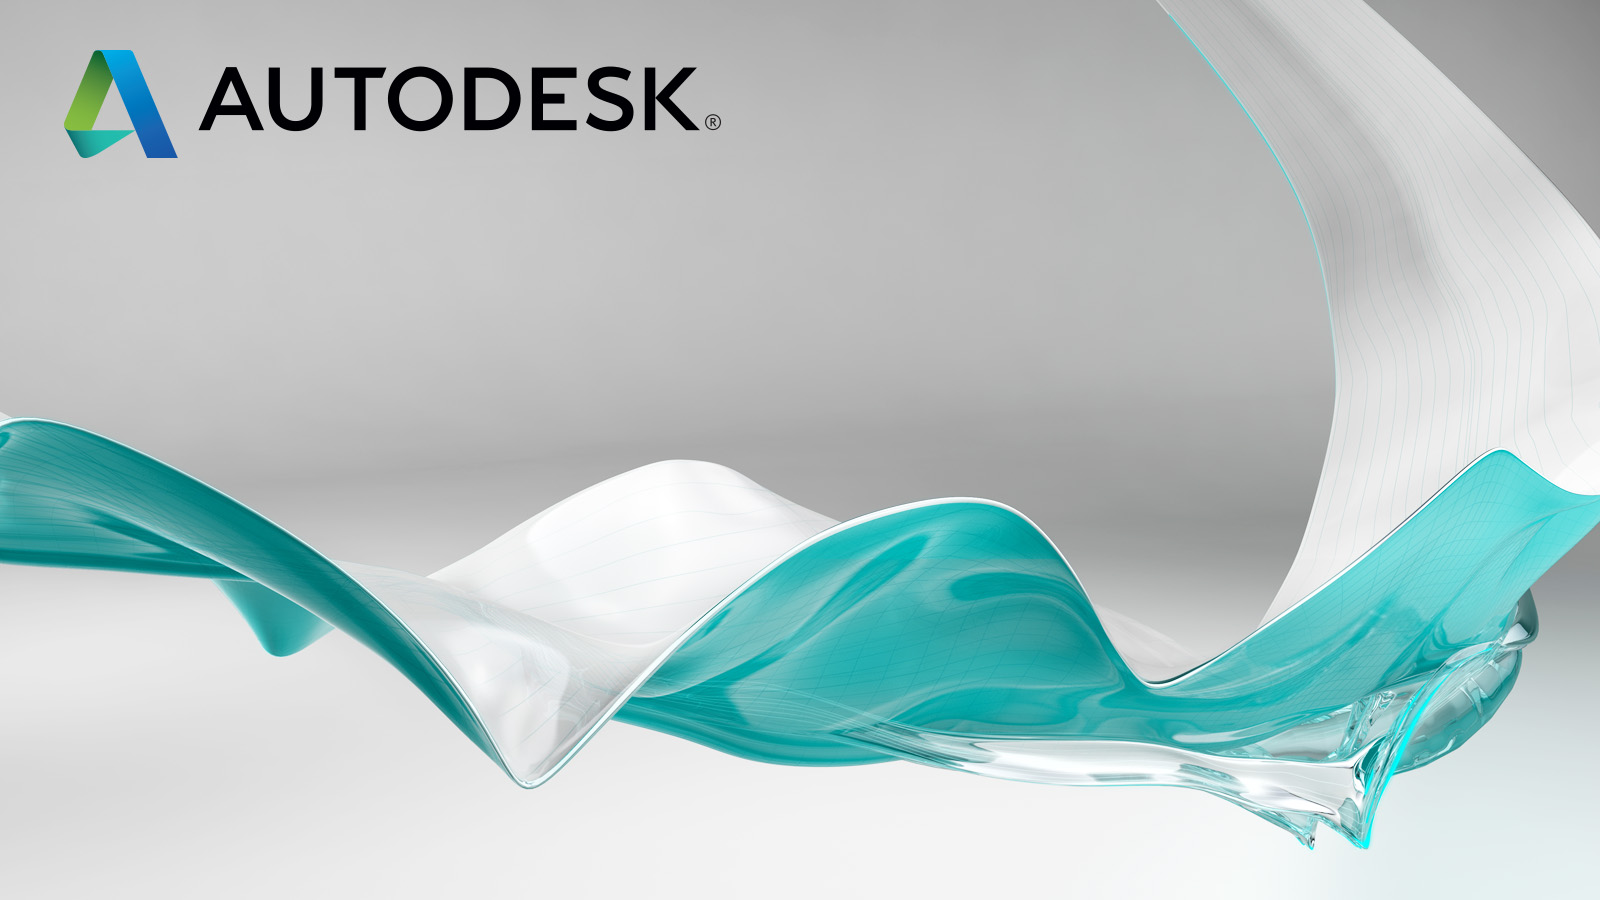 Software de Autodesk para Colombia - Adquiere con nosotros la licencia completa de Autodesk, con la que podrás diseñar, editar y producir contenidos profesionales en 2D y 3D - Colombia